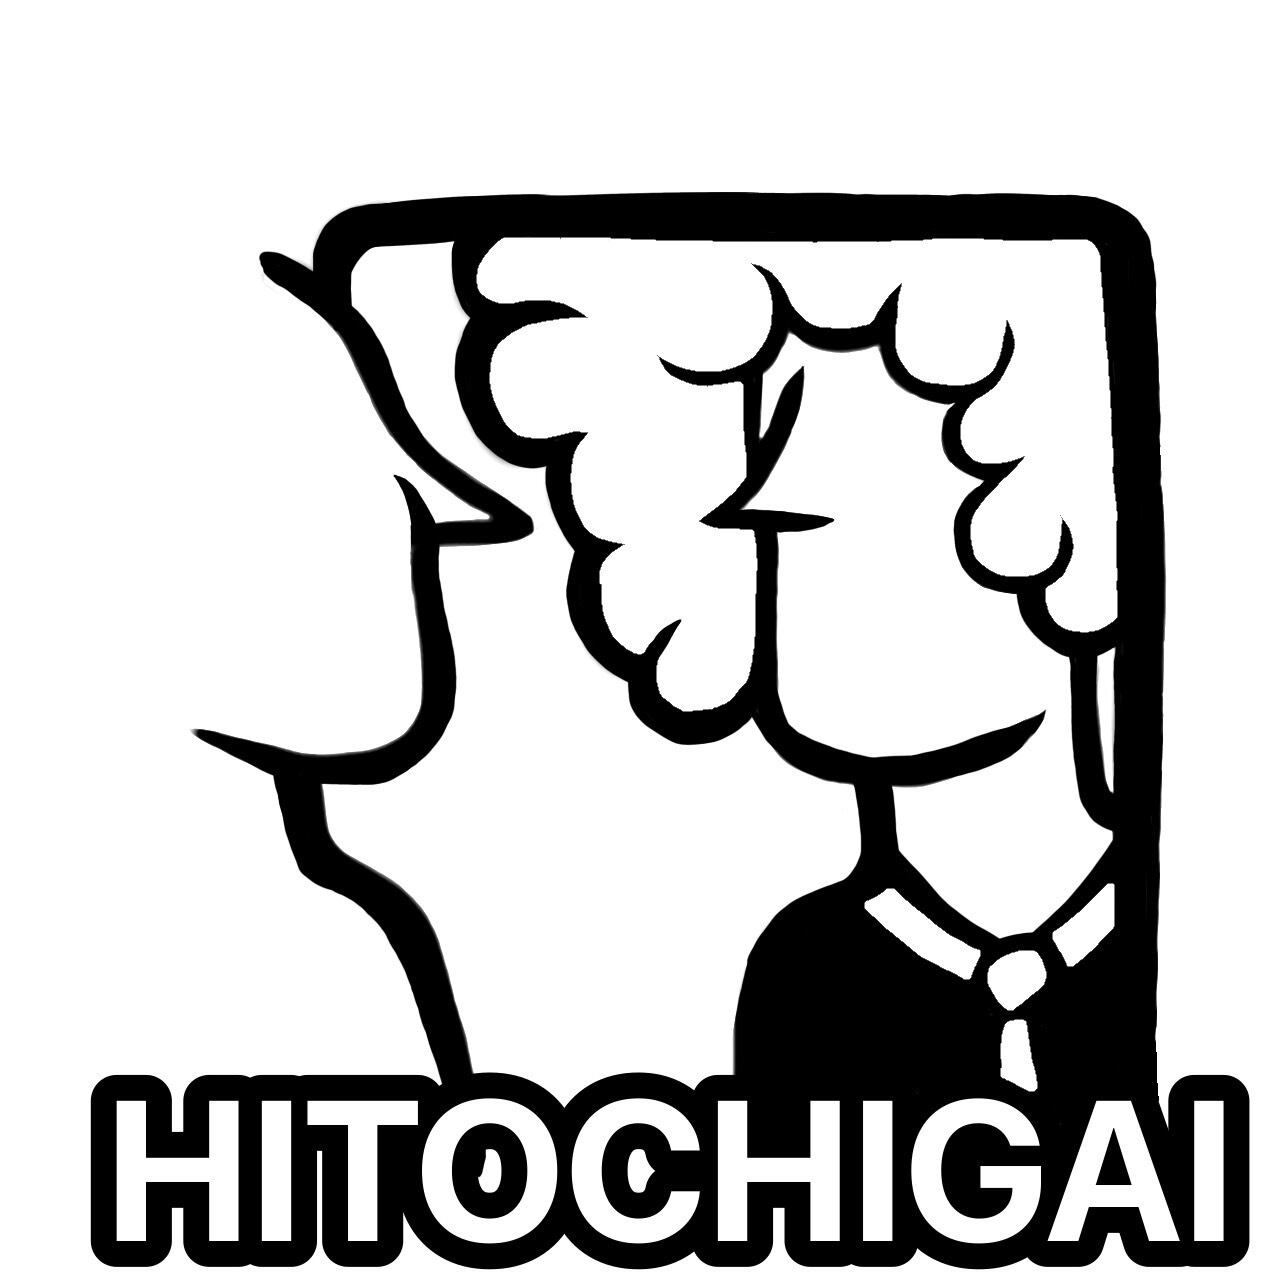 HITOCHIGAI